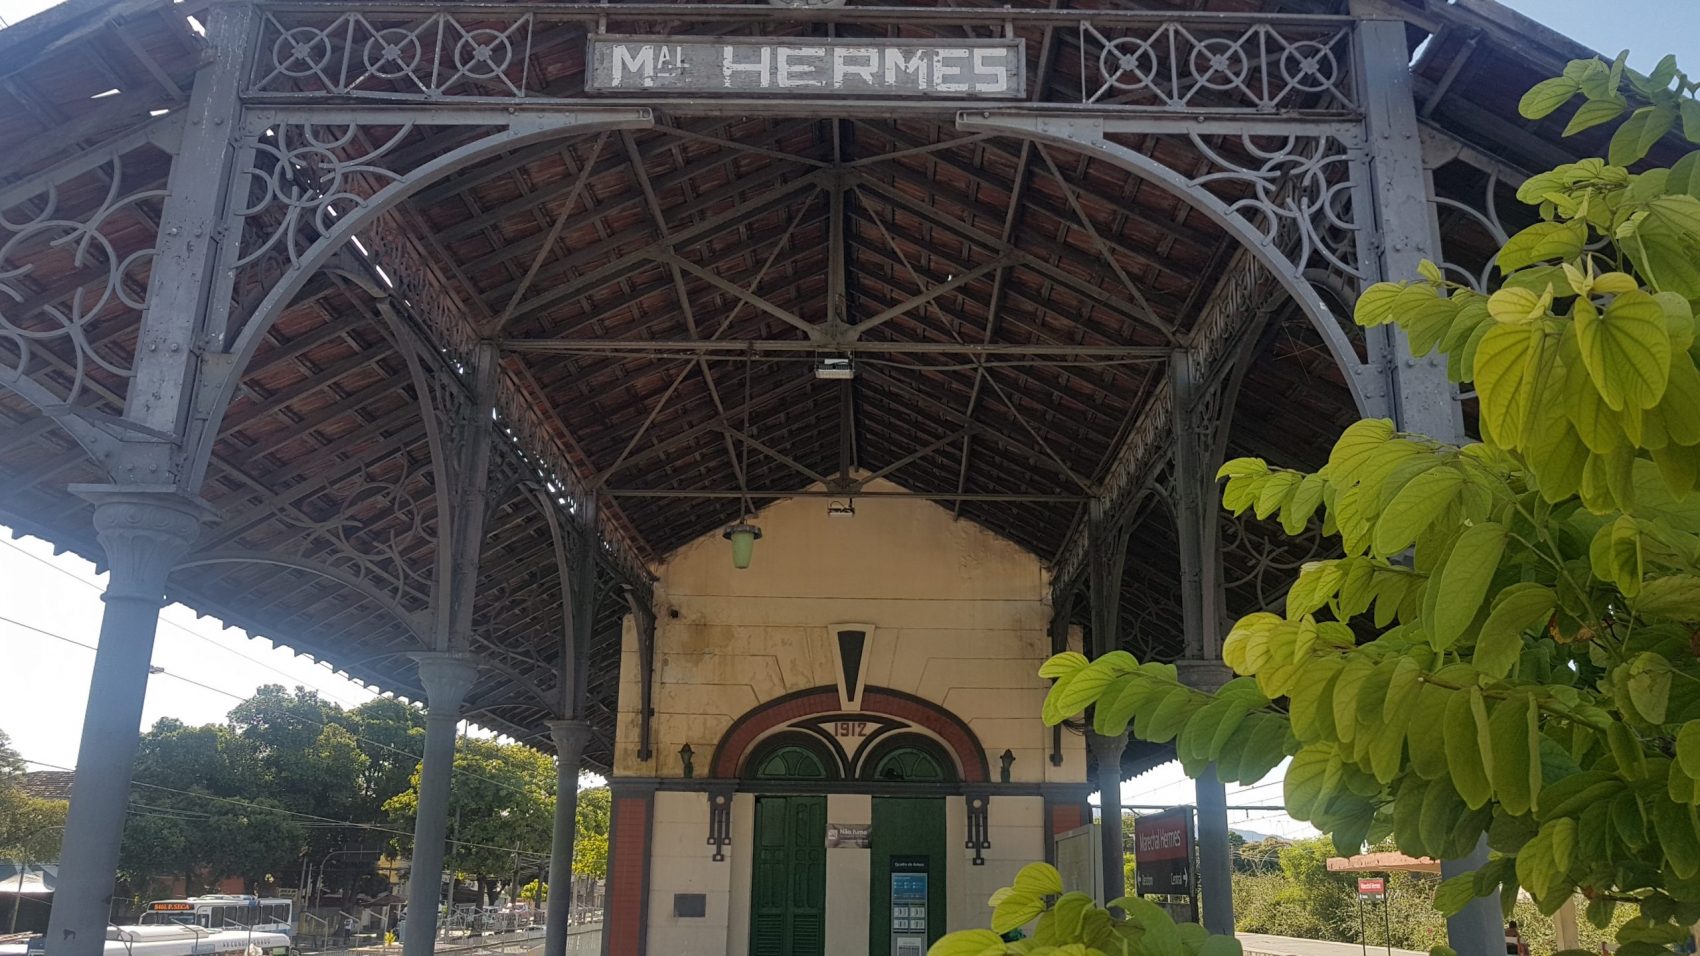 A estação de Marechal Hermes, inaugurado com o bairro há mais de um século: estilo arquitetônico preservado (Foto: Oscar Valporto)